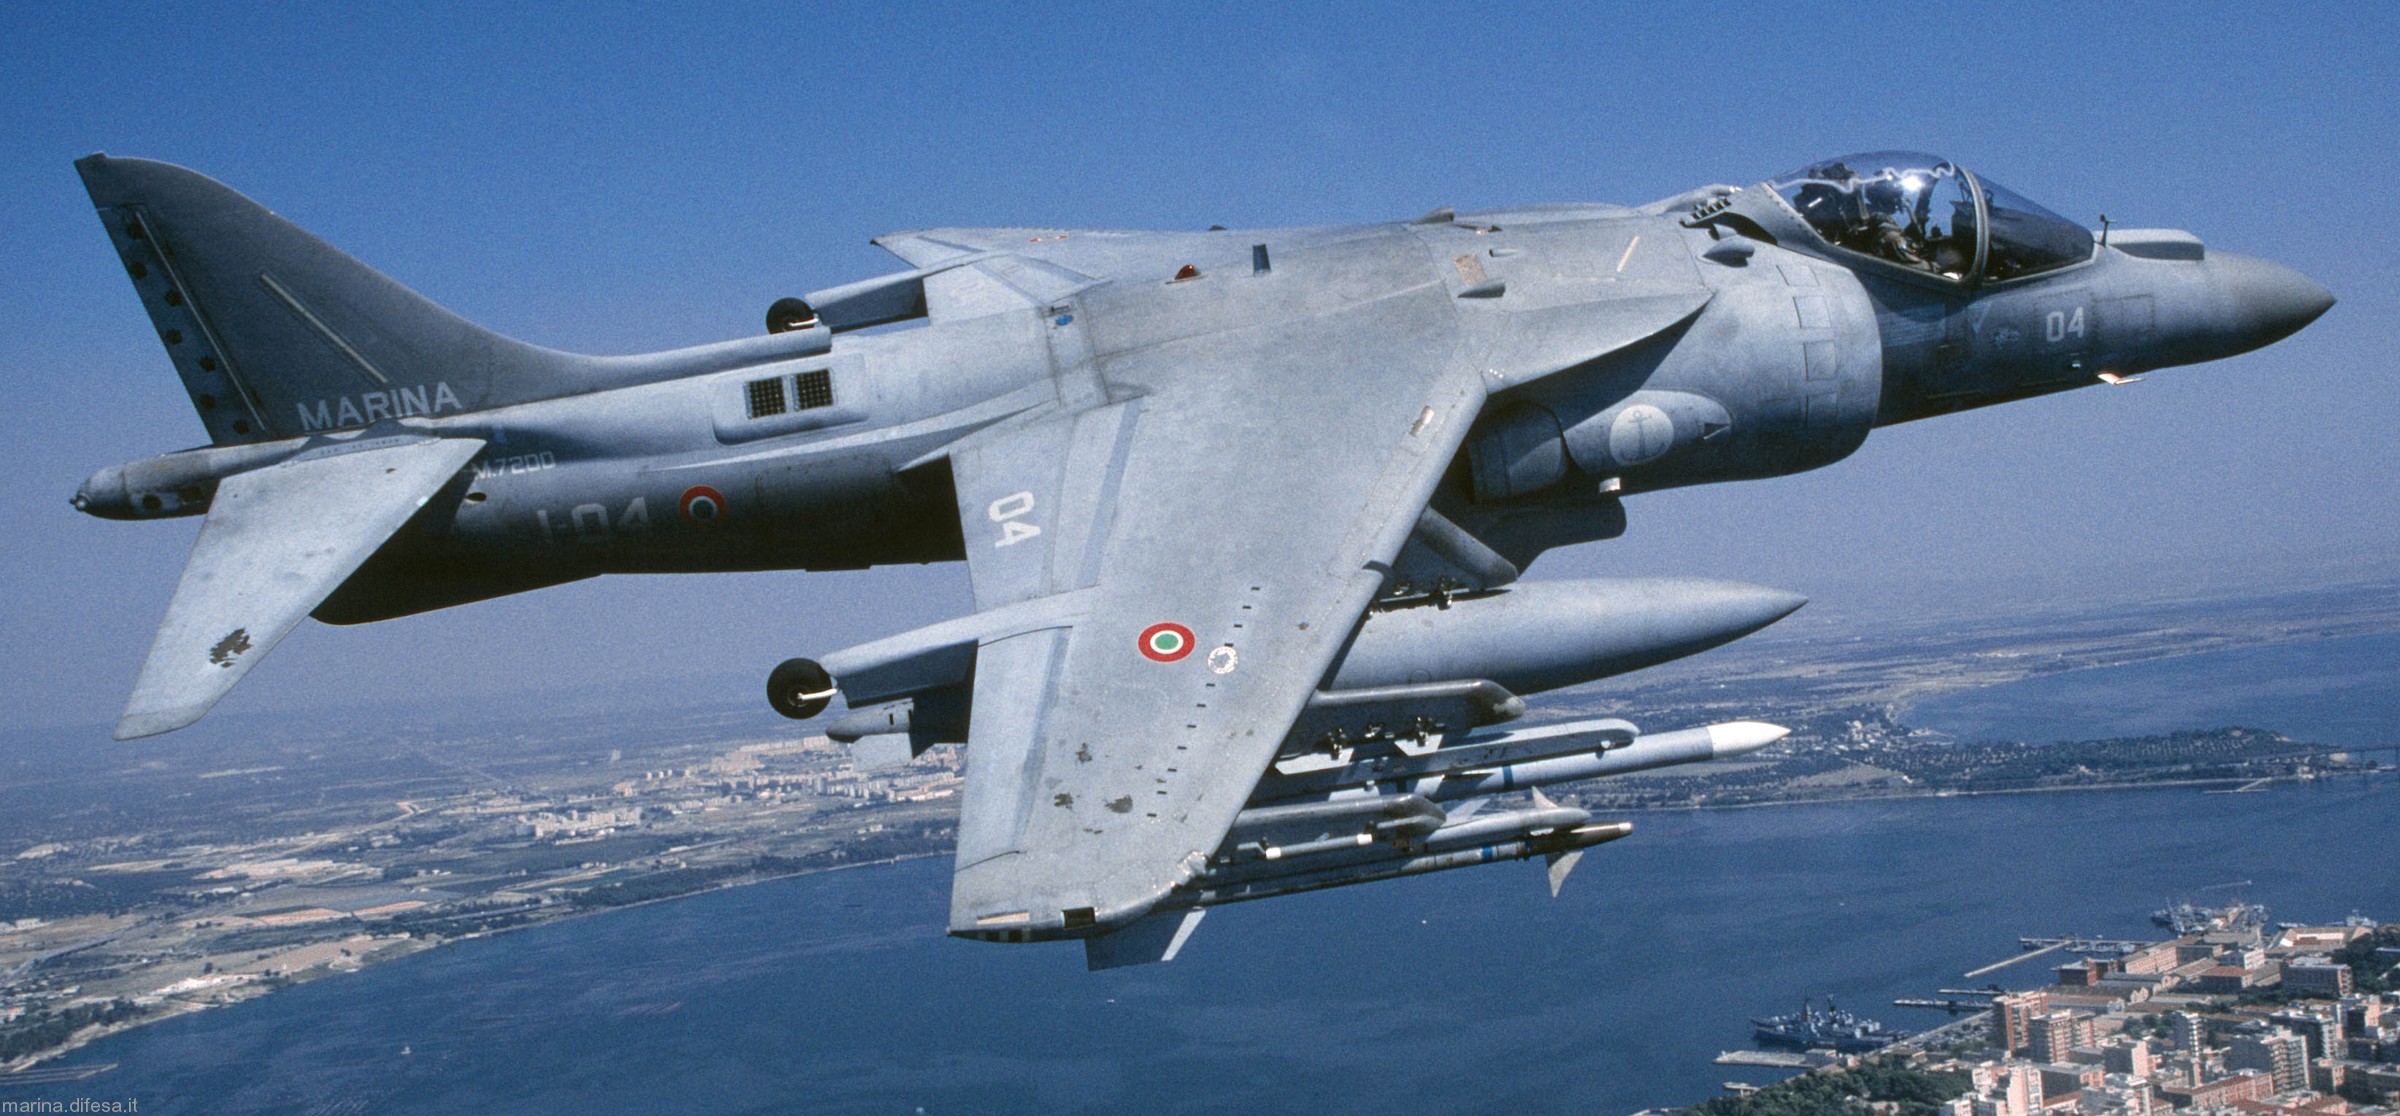 AV-8B Harrier II GR9 VSTOL Strike Aircraft - Airforce Technology